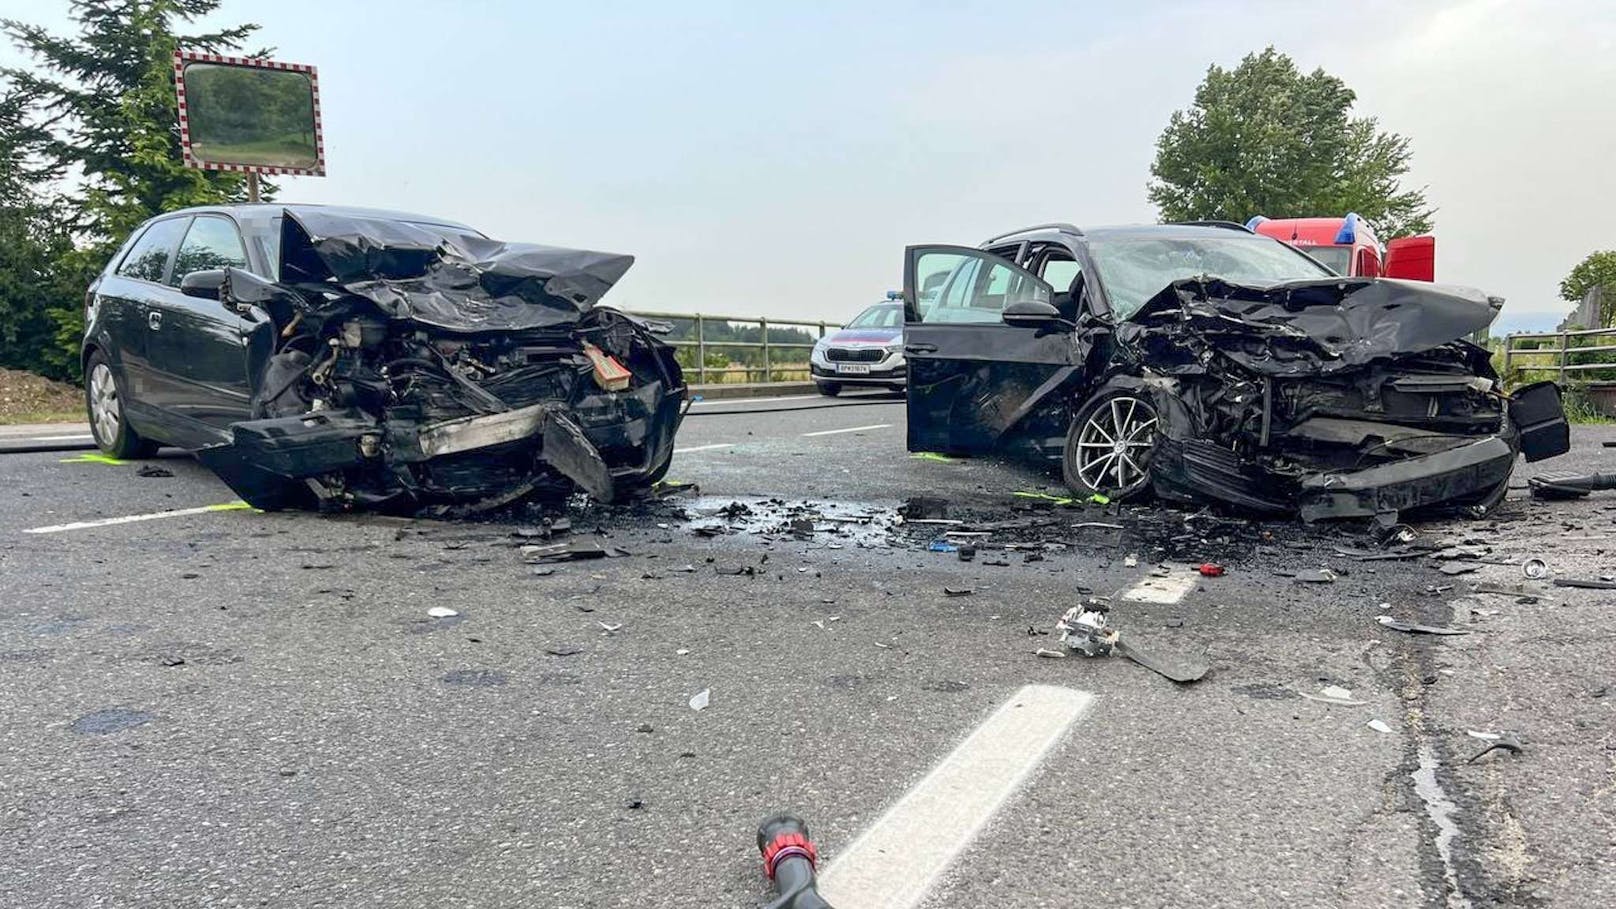 Ohne gültigen Führerschein – Crash mit sechs Verletzten